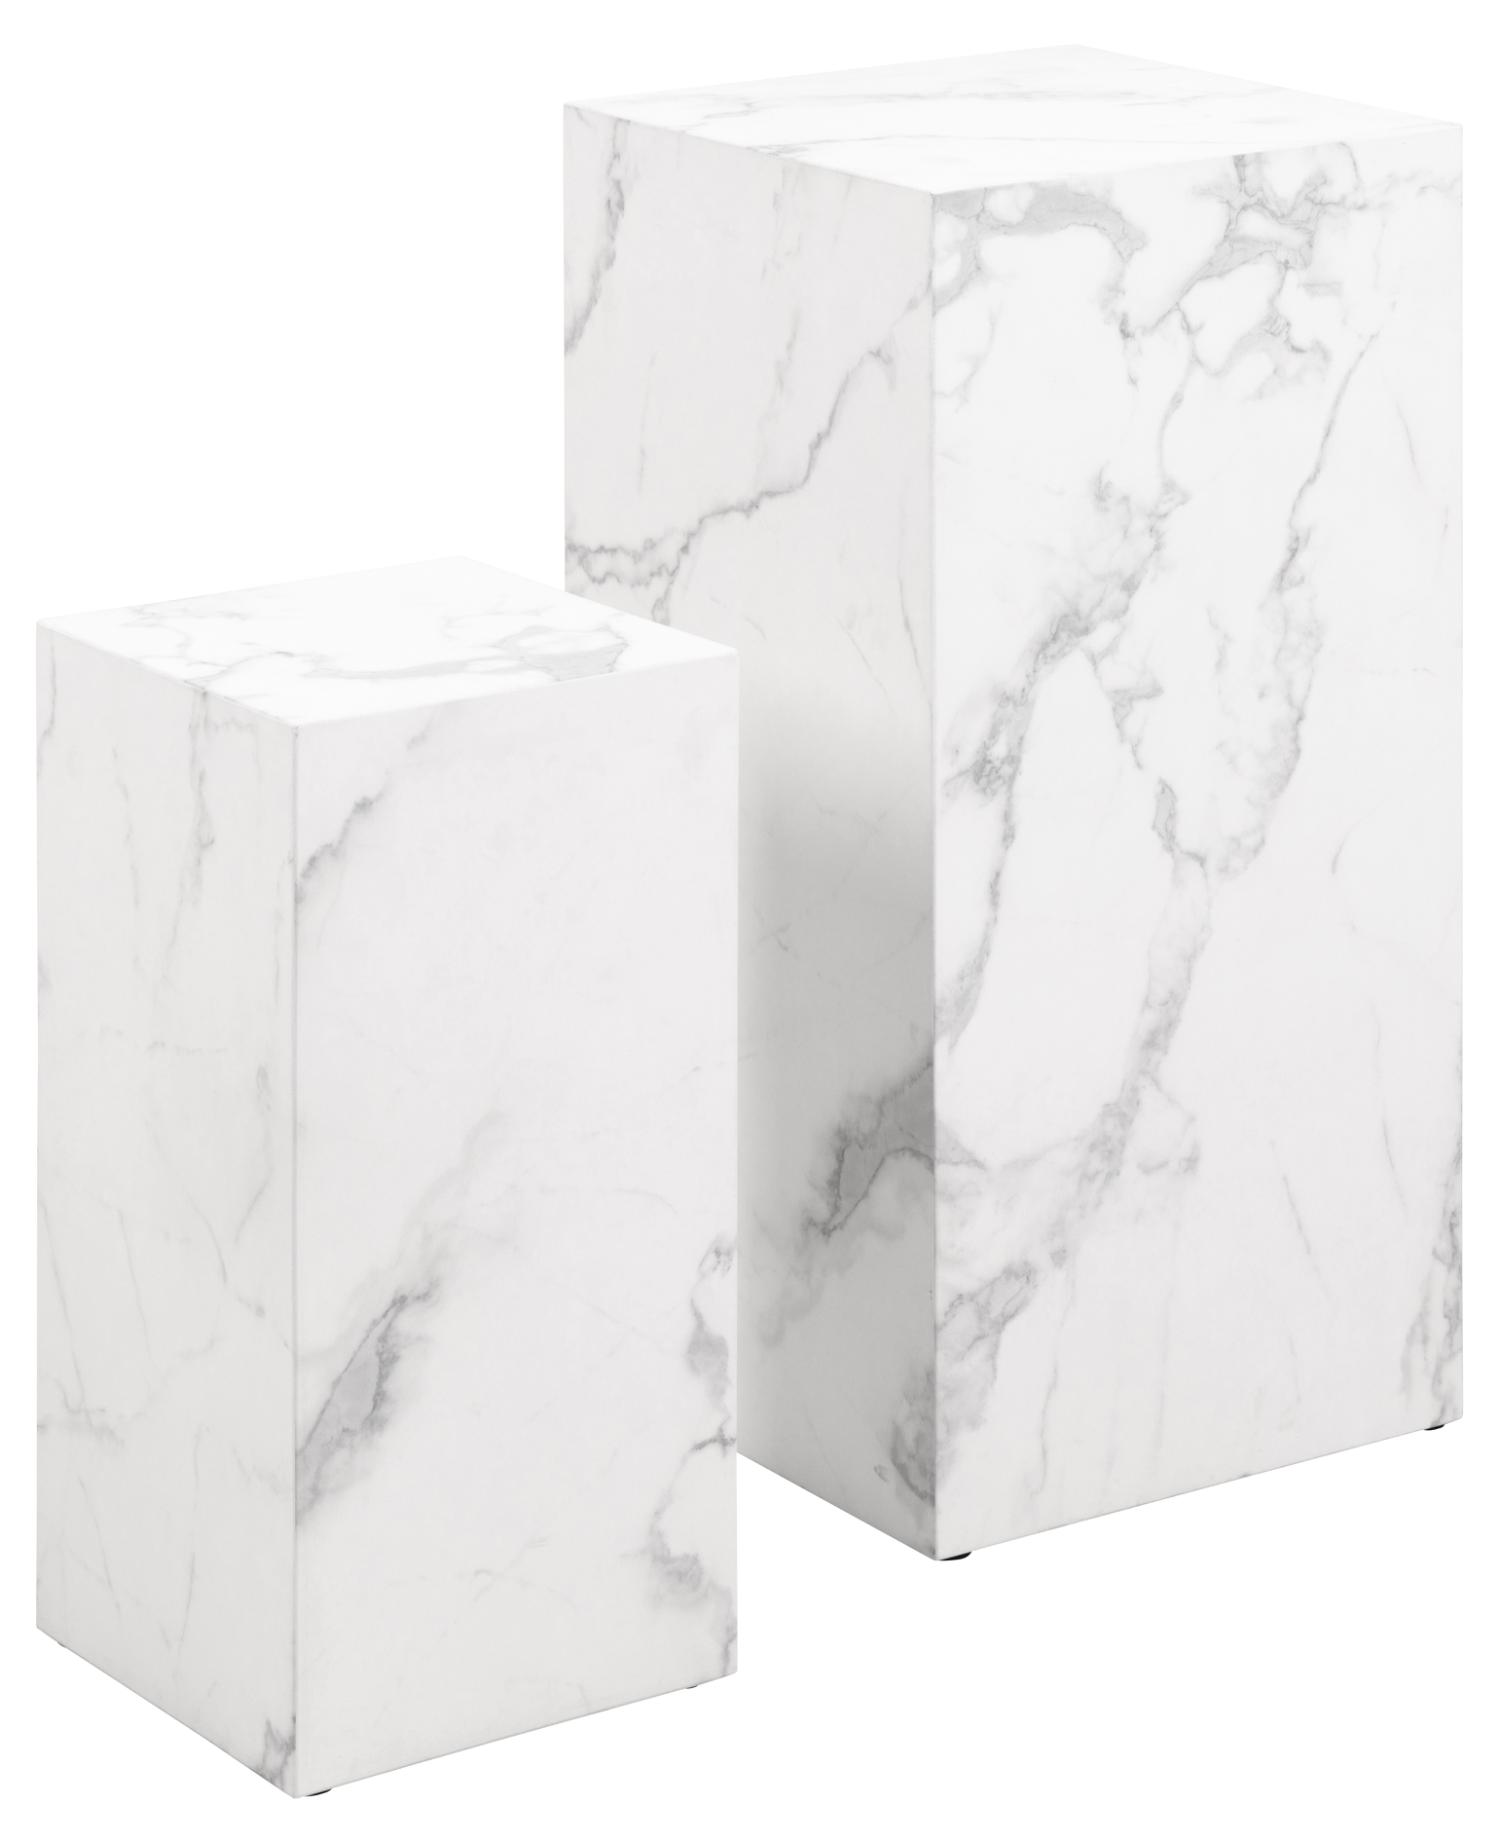 ACT NORDIC Dice pedestal, kvadratisk - hvid papir med Carrara marmormønster (sæt af 2)